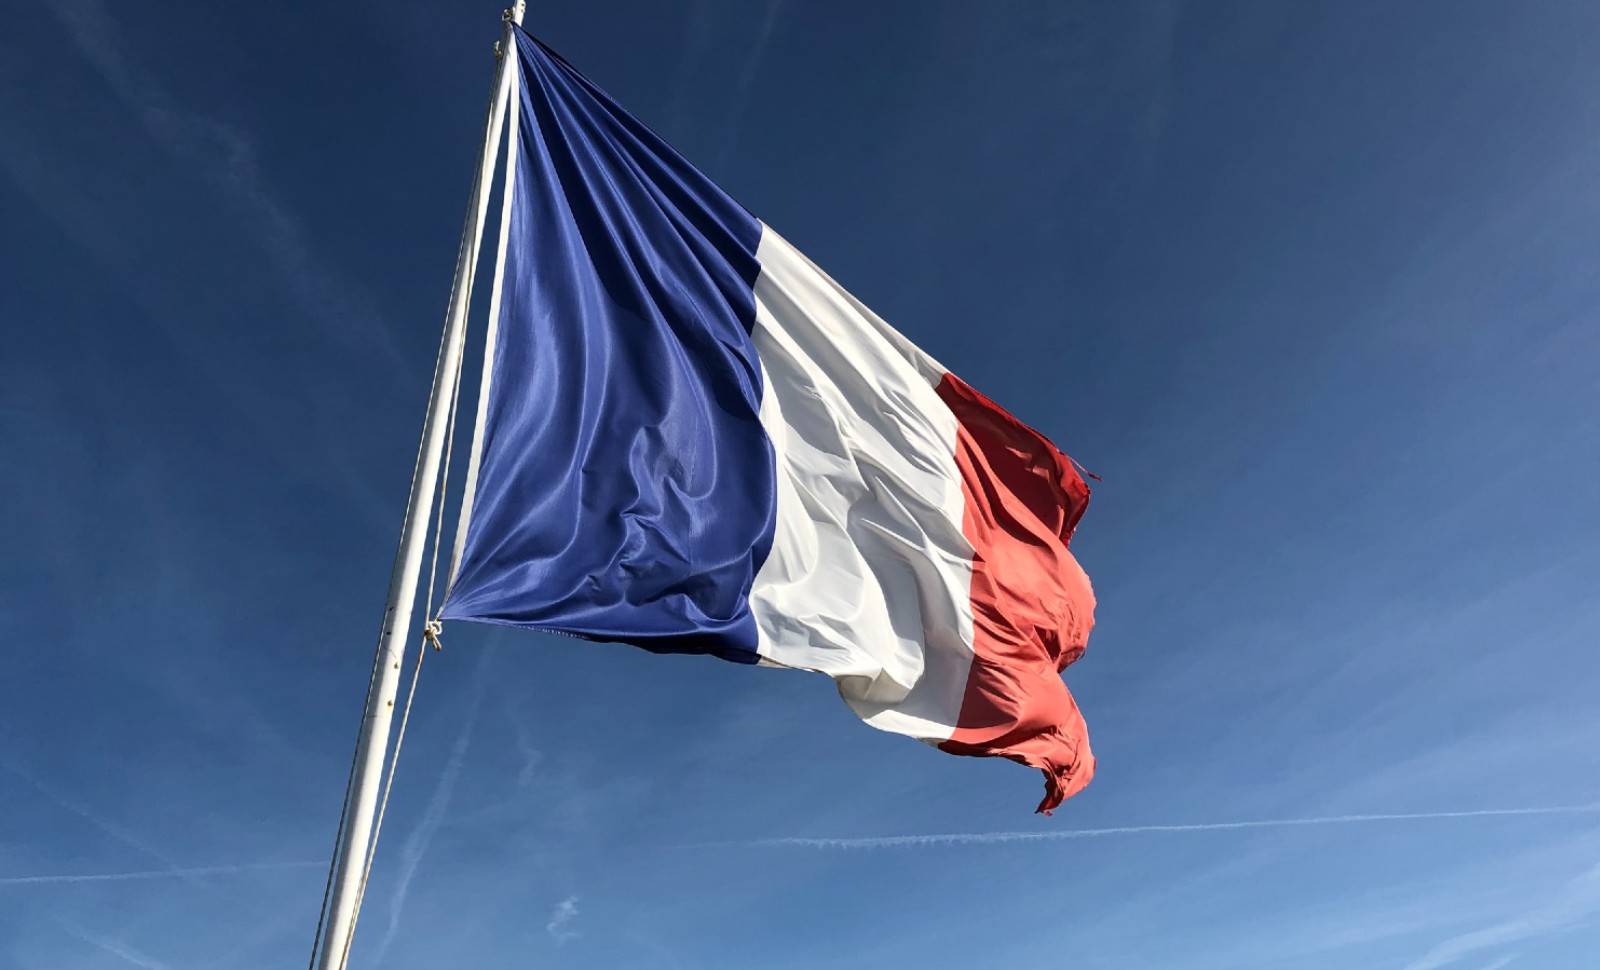 Le temps et l’espace: transmettre la France en héritage